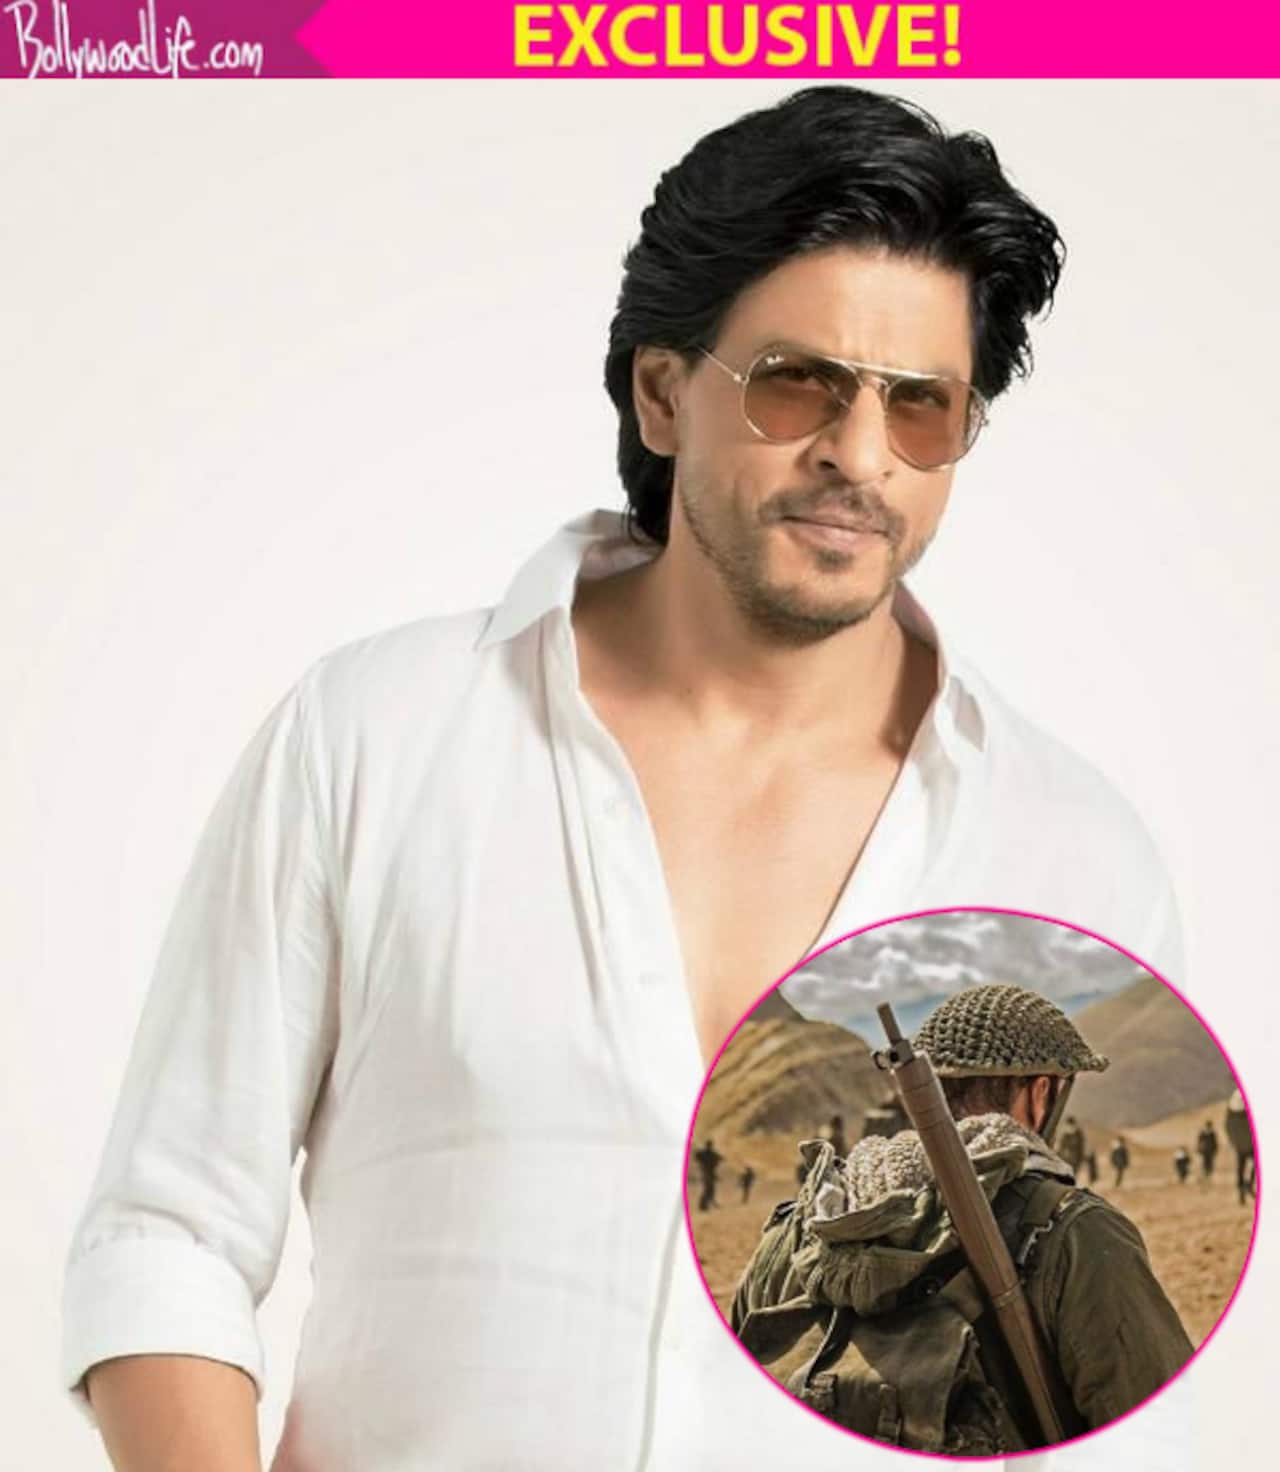 Shah Rukh Khan joins Salman Khan's Tubelight cast - read EXCLUSIVE details!